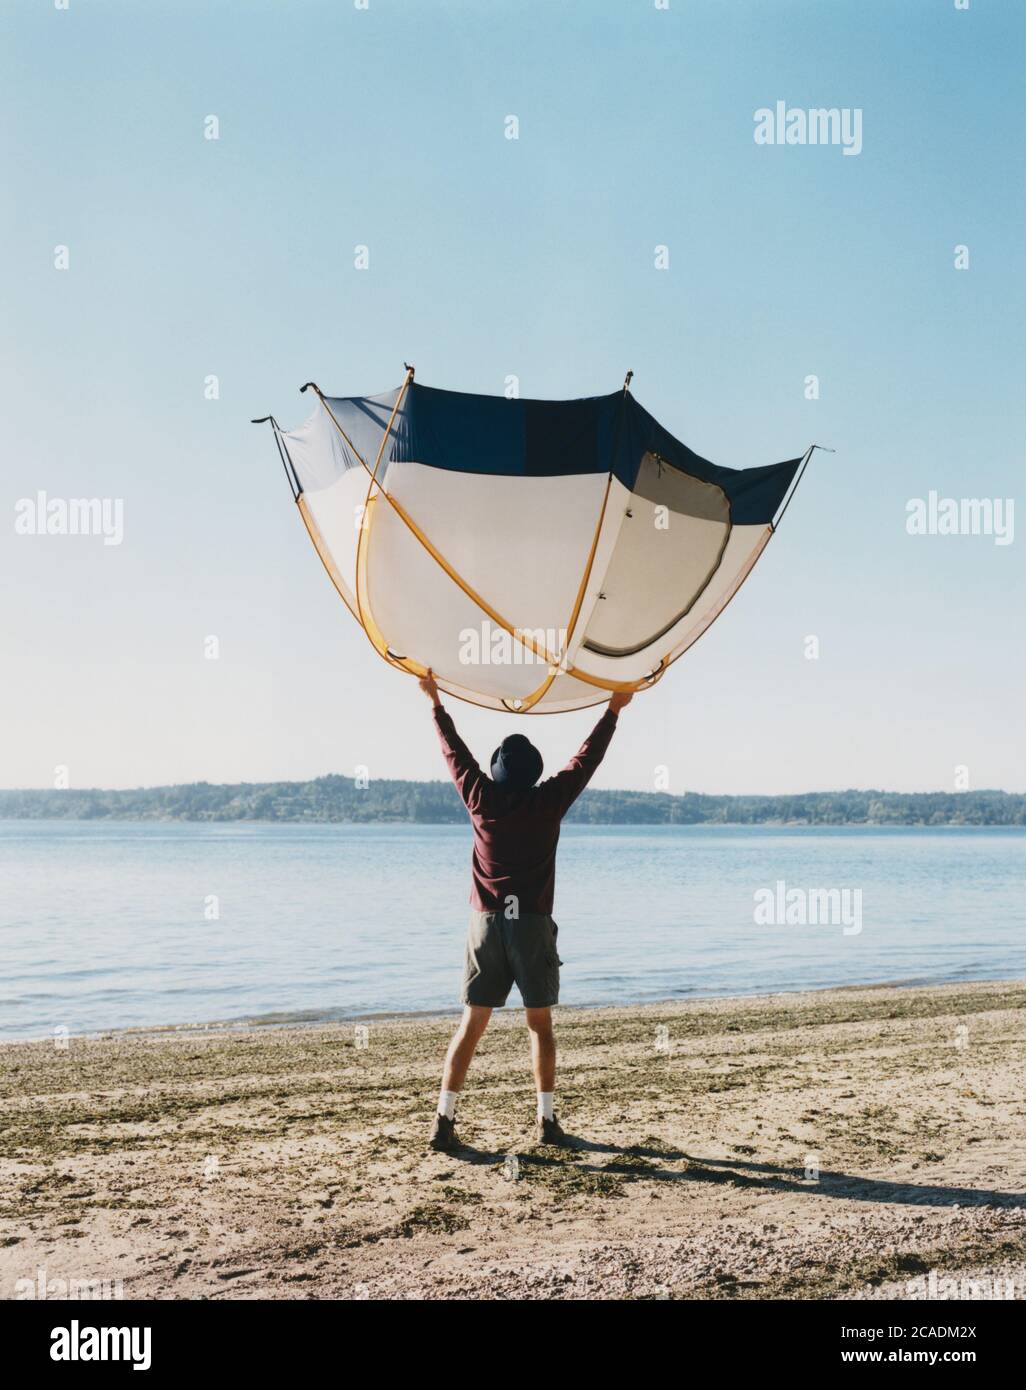 Un uomo che tiene una piccola tenda a cupola sopra la testa, in piedi sulla spiaggia Foto Stock